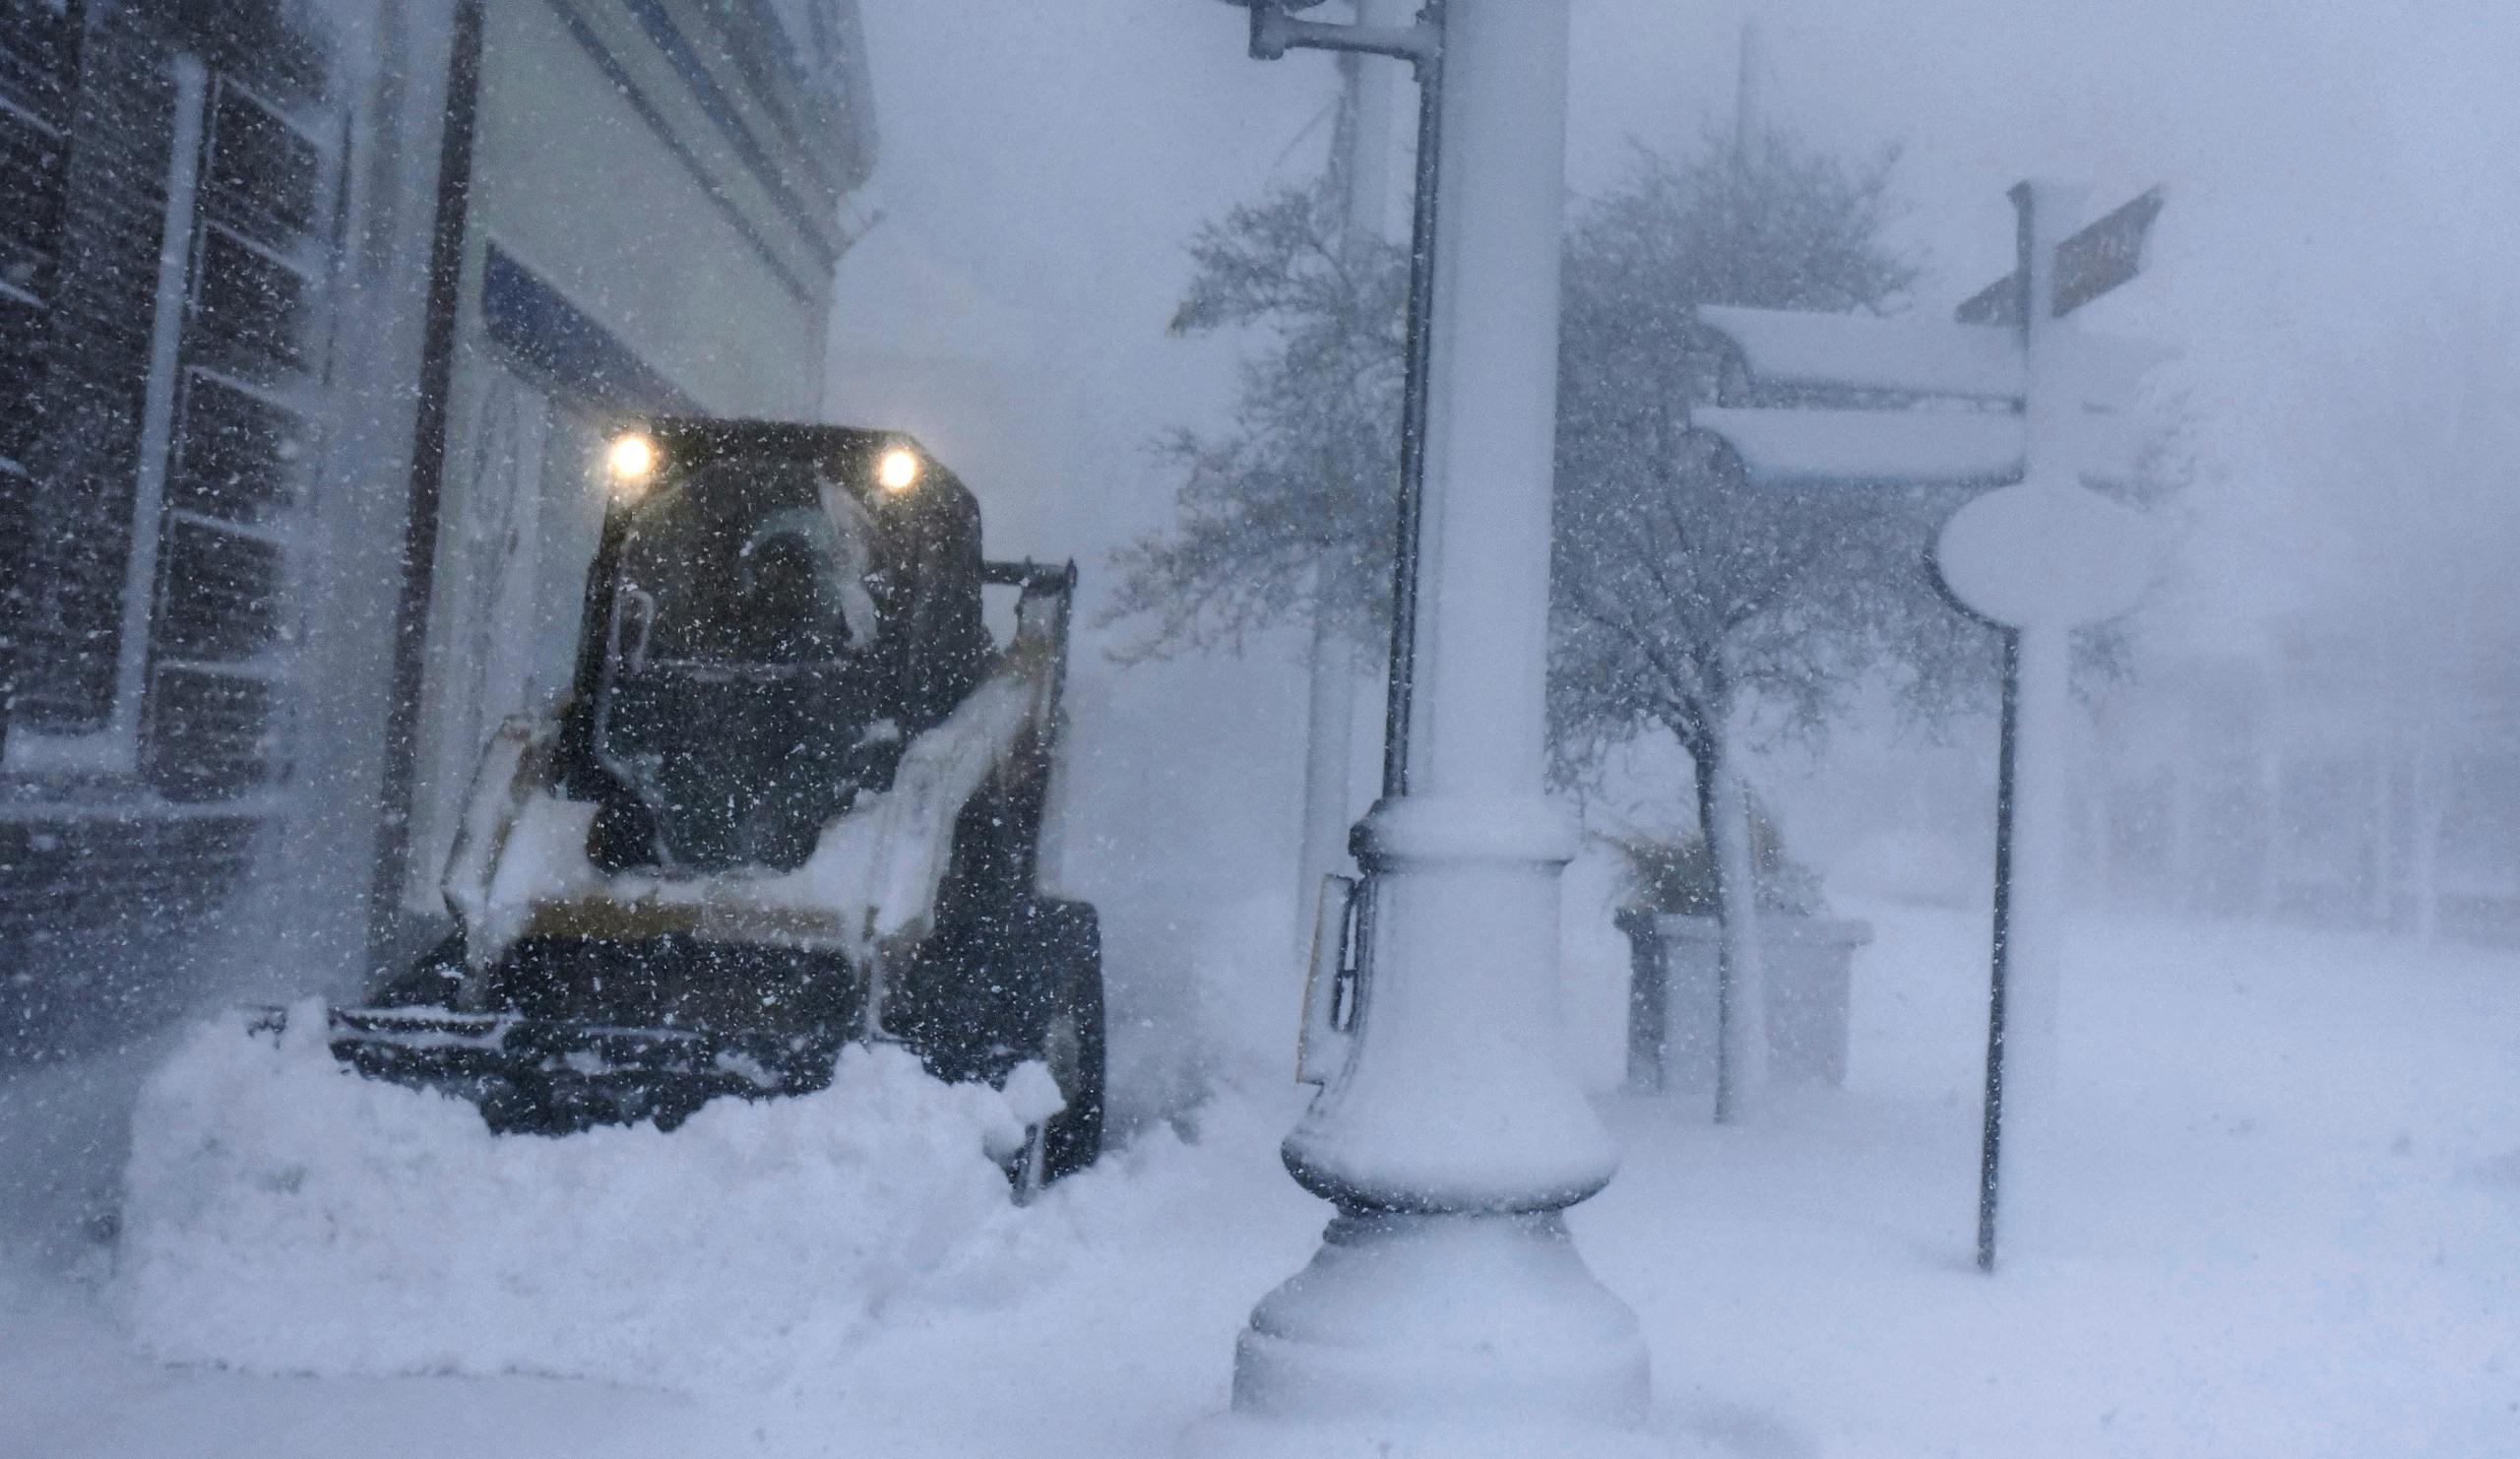 Un empleado del municipio trabaja para retirar la nieve de las aceras en la calle principal de Hyannis, Massachussetts luego de la intensa nevada que ha caído en la zon desde la noche del viernes.